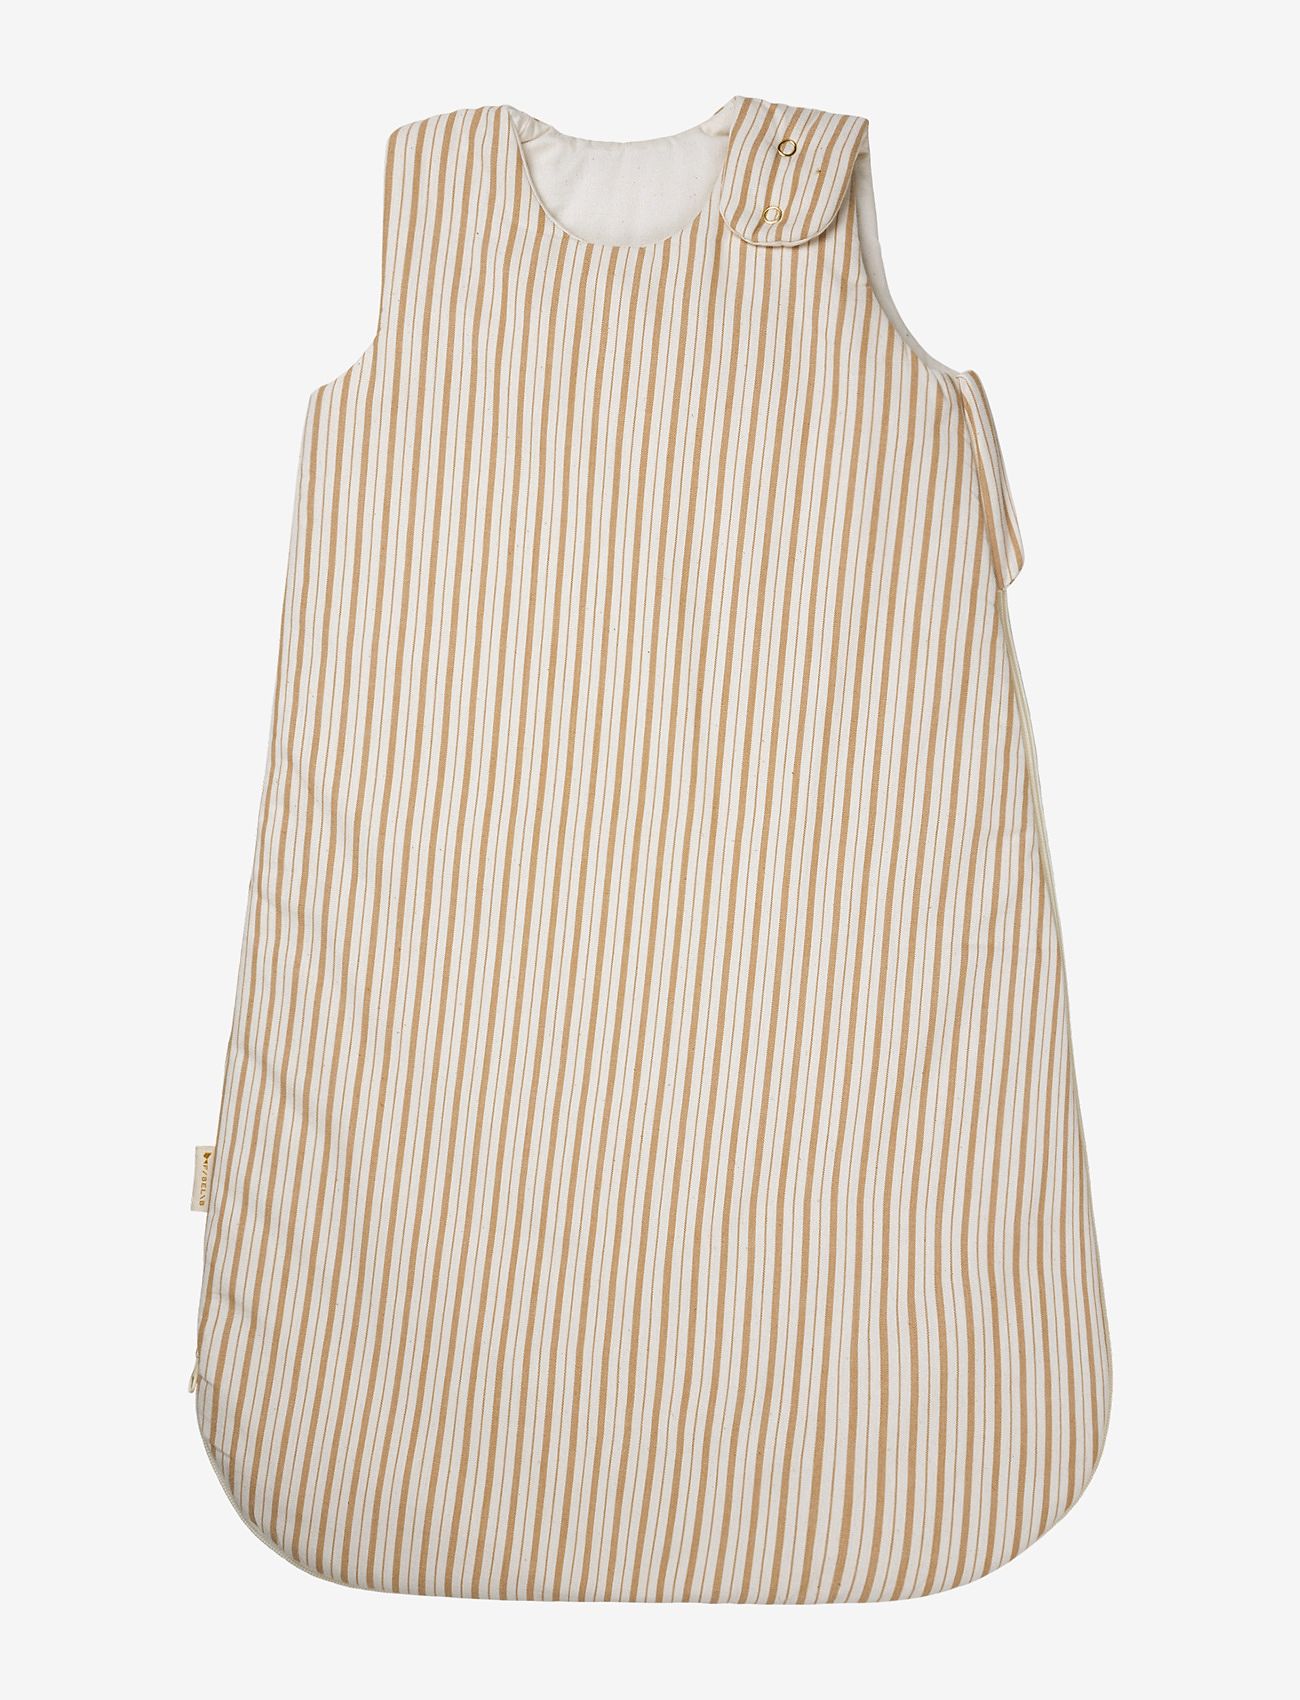 Fabelab - Sleeping bag - Caramel Stripes 6-18M - kids - natural - 0